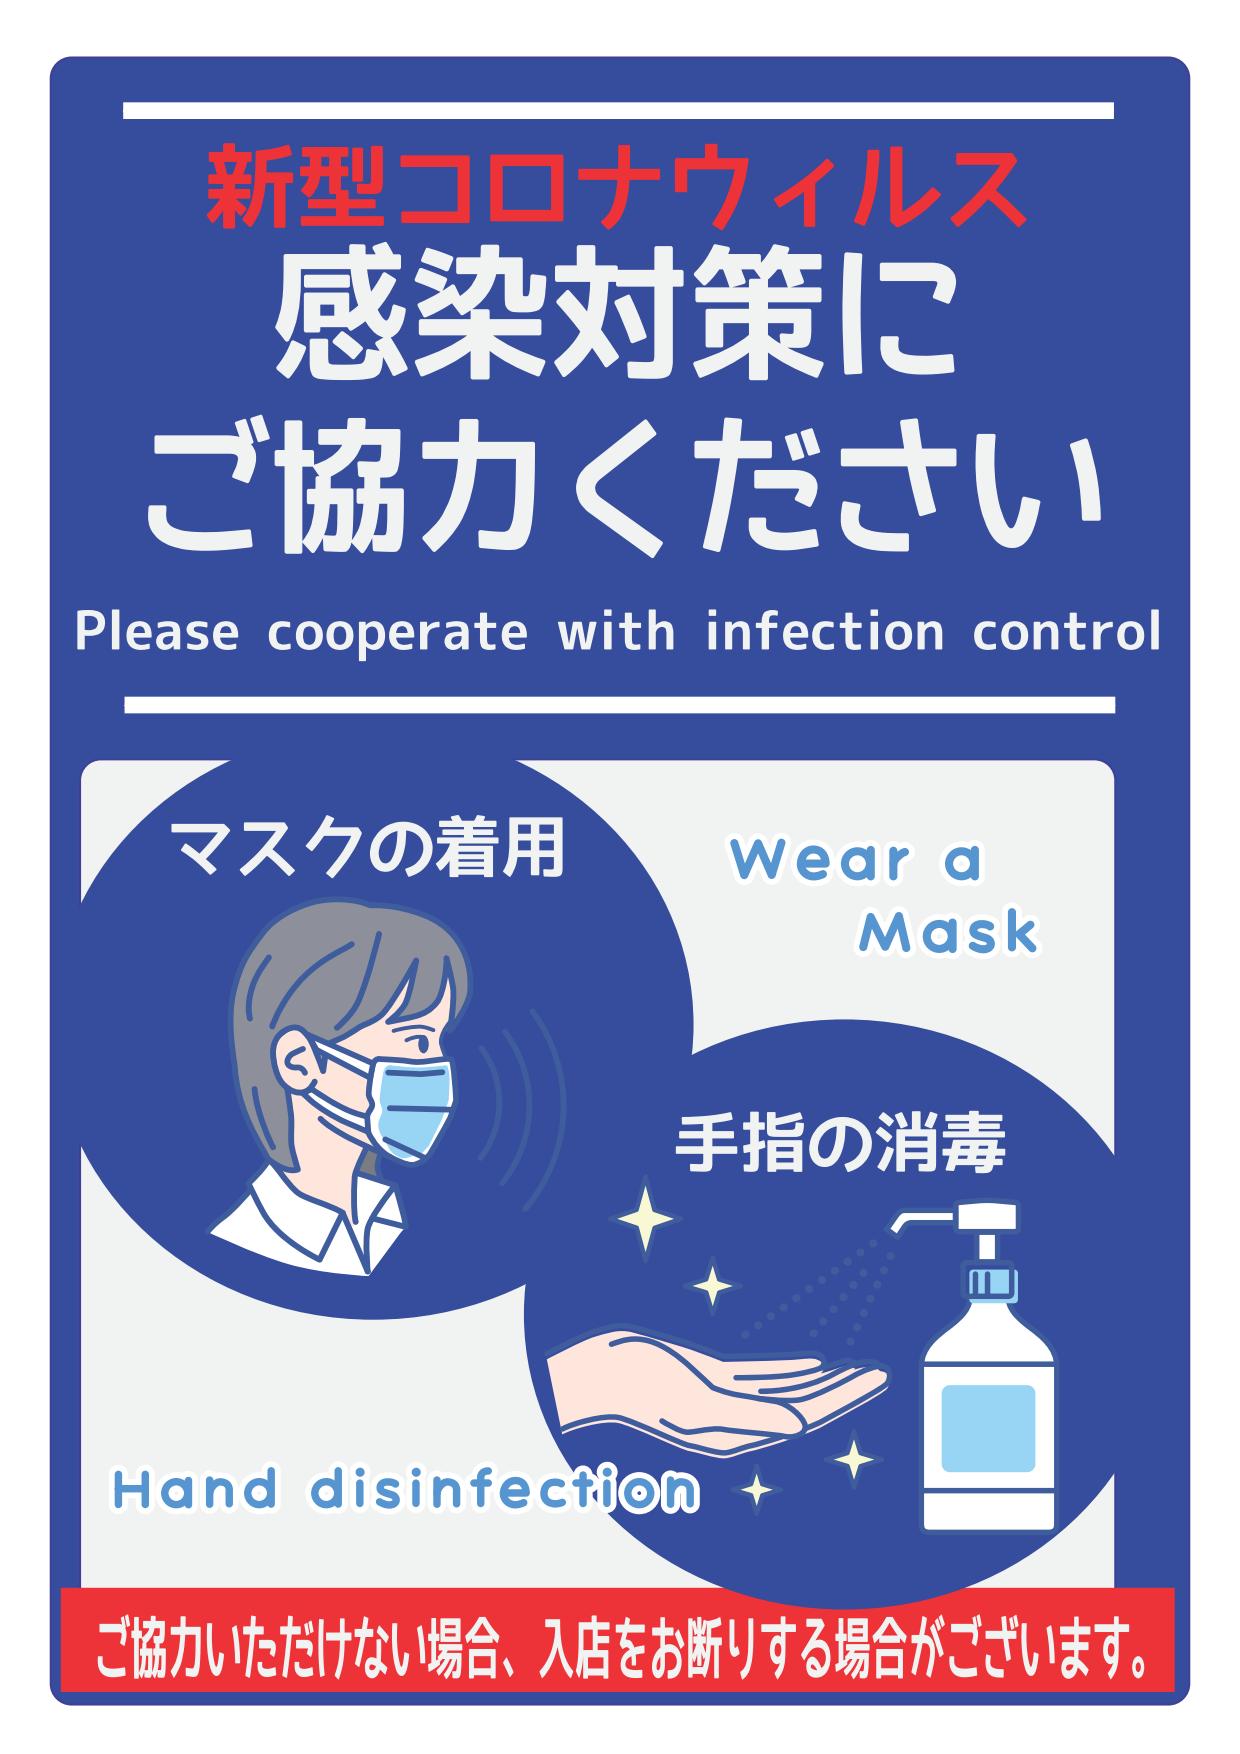 生協をご利用の際は「マスク着用」をお願いします｜生協について｜静岡大学生活協同組合